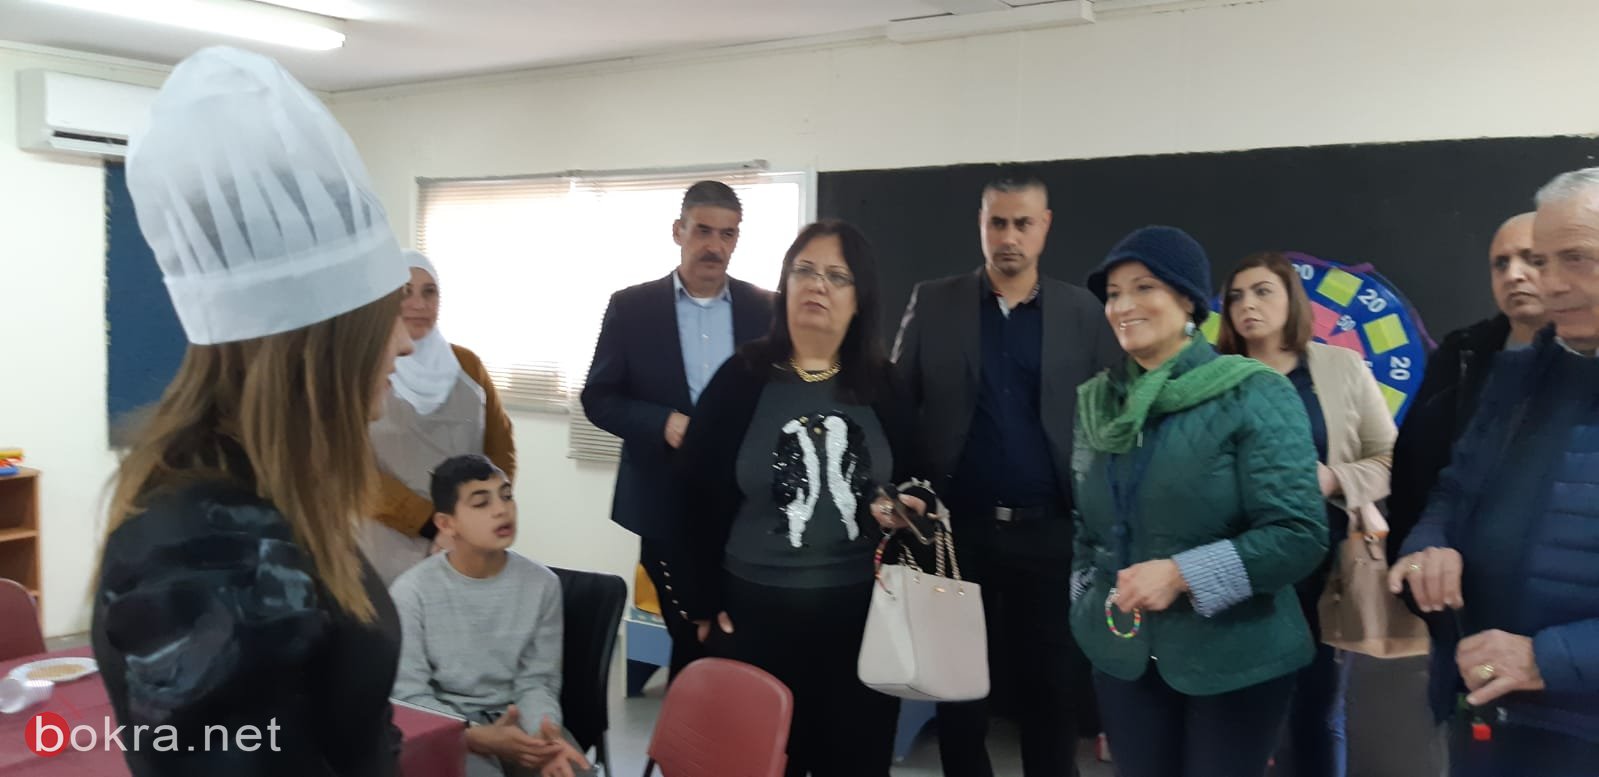 كفر مصر: مدرسة الأمل تستضيف مدراء مدارس ضمن برنامج التعلم المتبادل-58